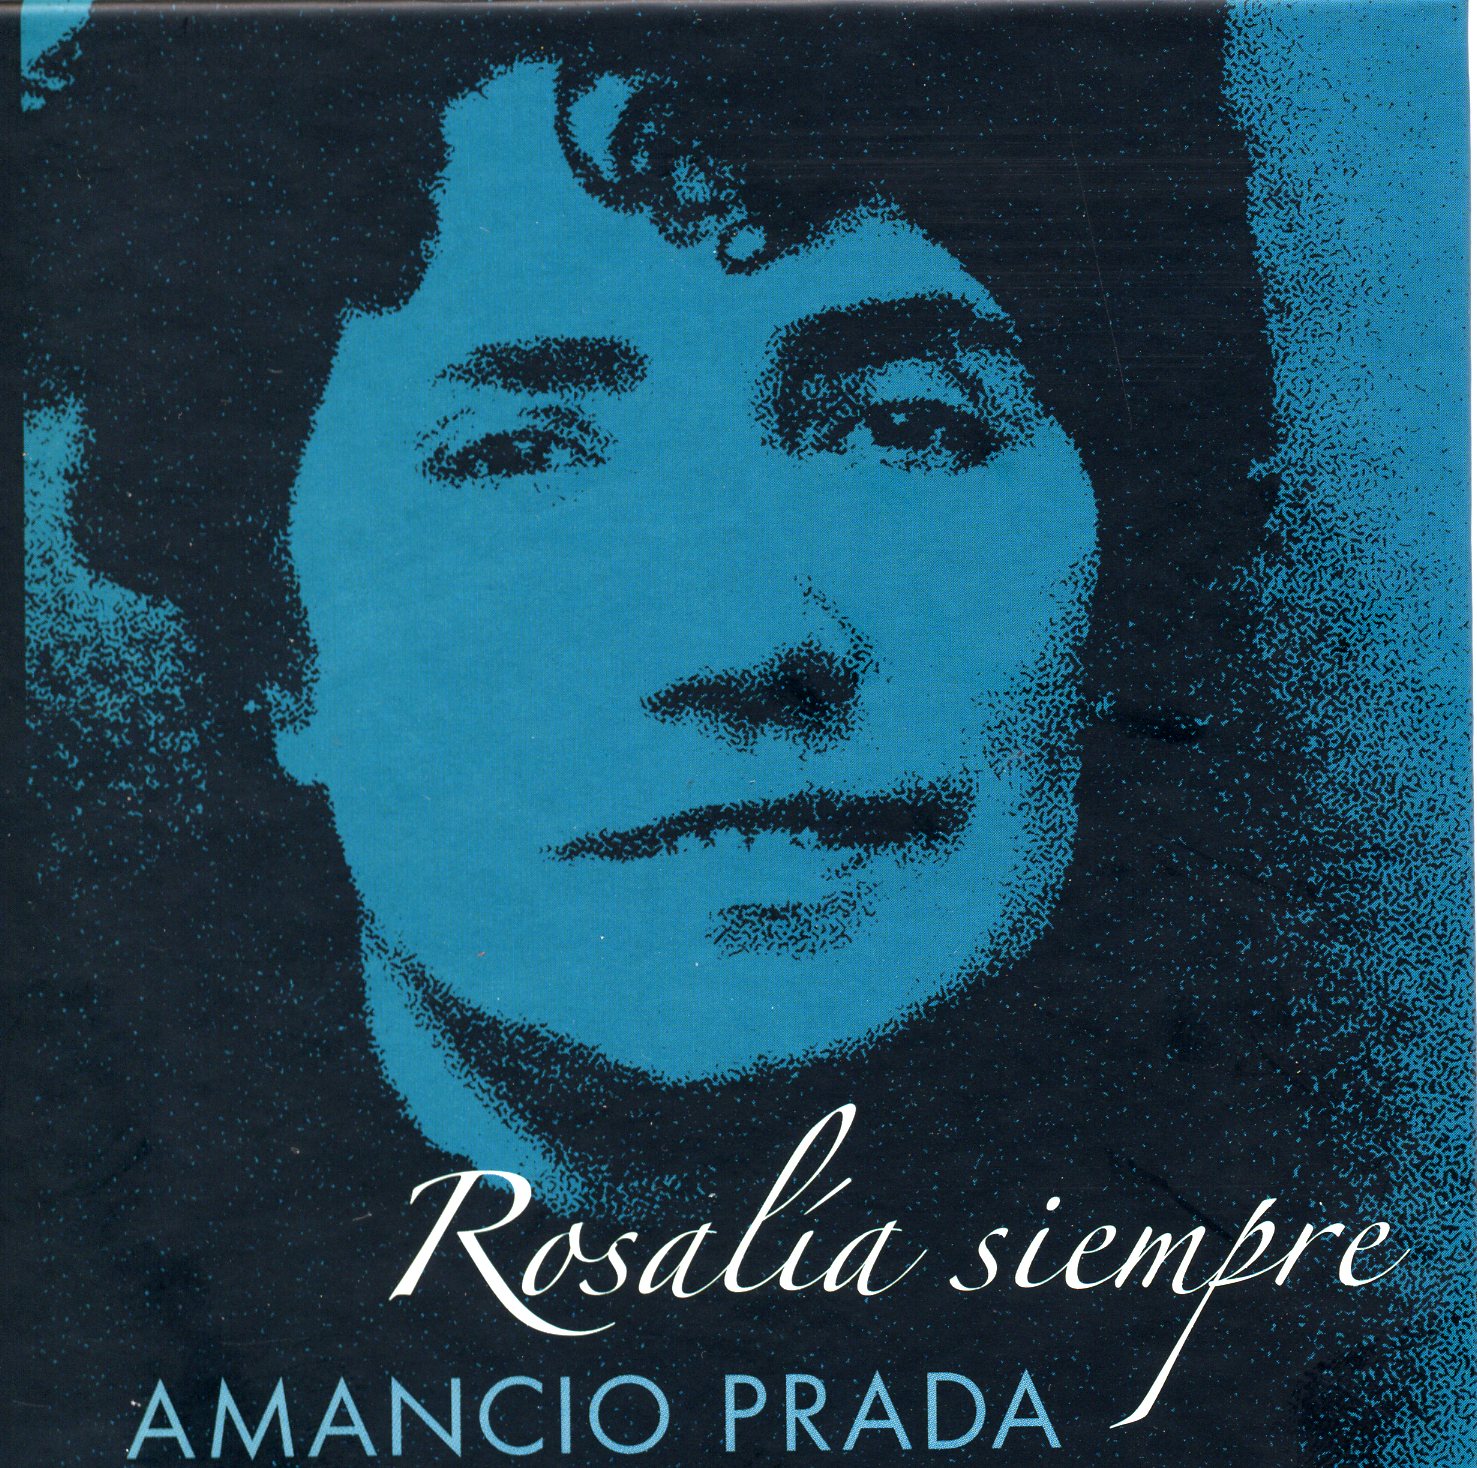 Rosalía siempre (2005) – Amancio Prada